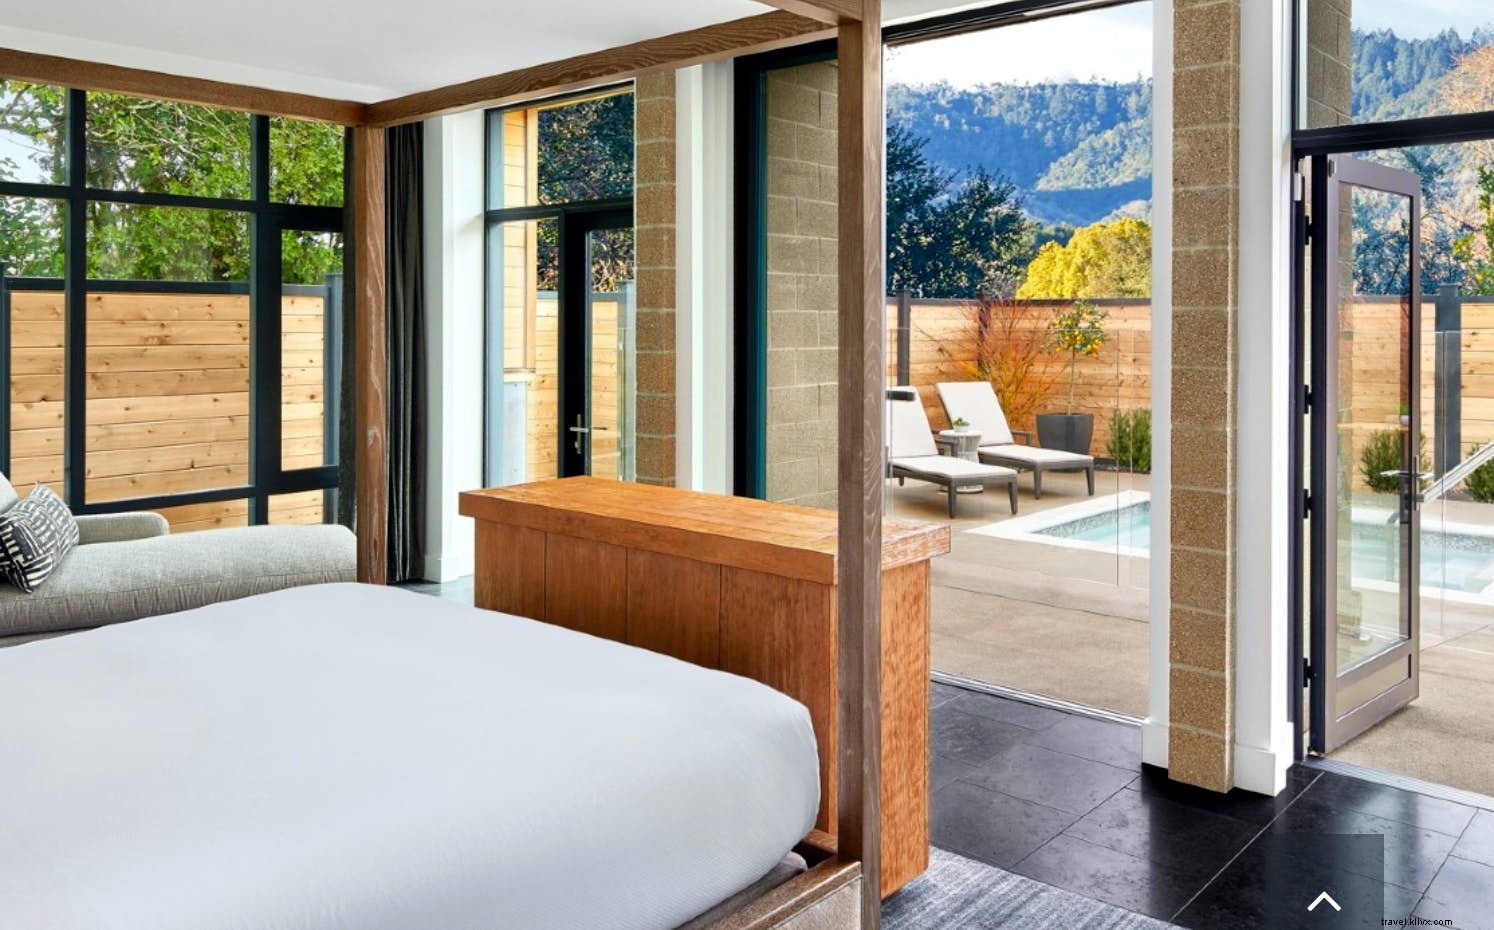 Mergulhe na sua própria piscina privada nestes luxuosos quartos de hotel 